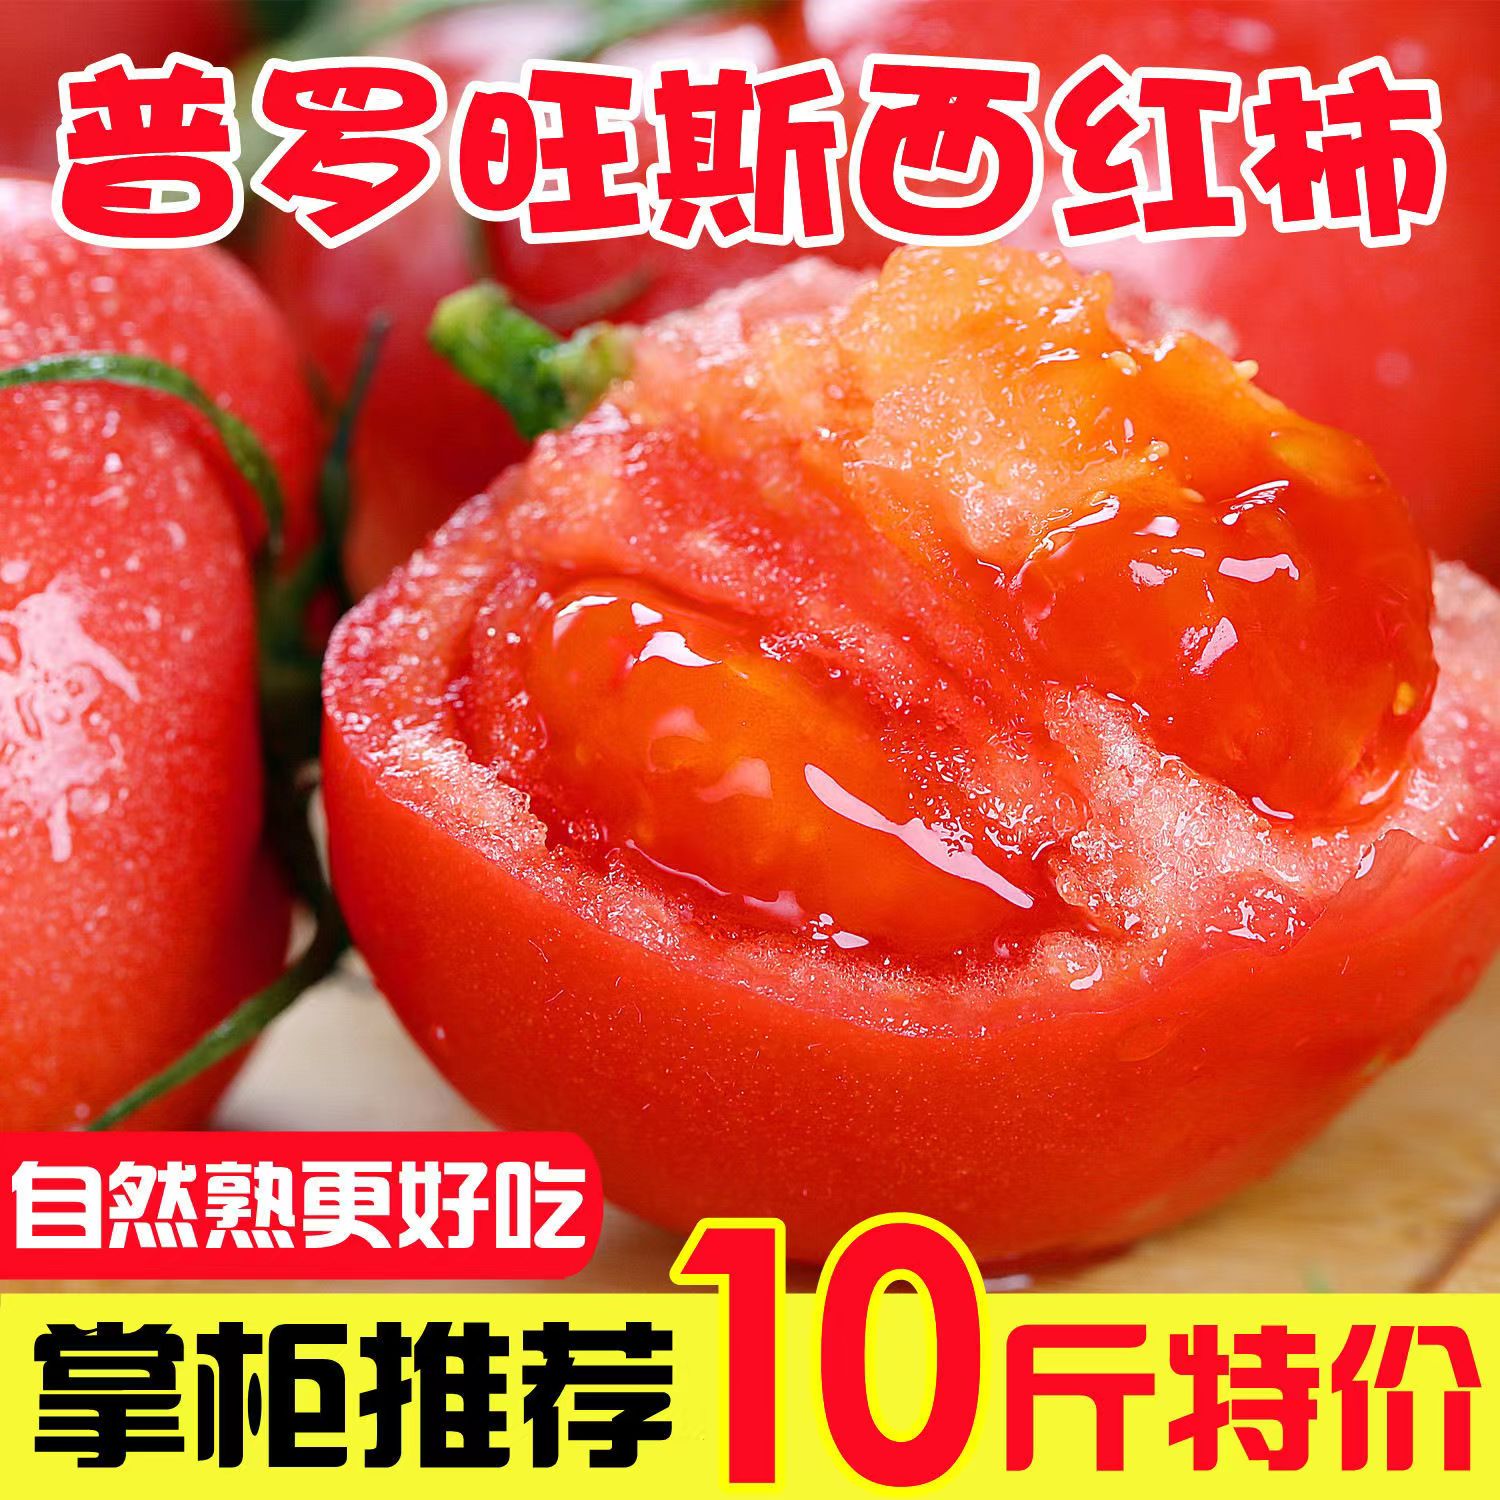 果淳乐沙瓤西红柿 普罗旺斯 可生吃新鲜水果大番茄农家蔬菜普罗旺斯 沙瓤西红柿    带箱3斤装